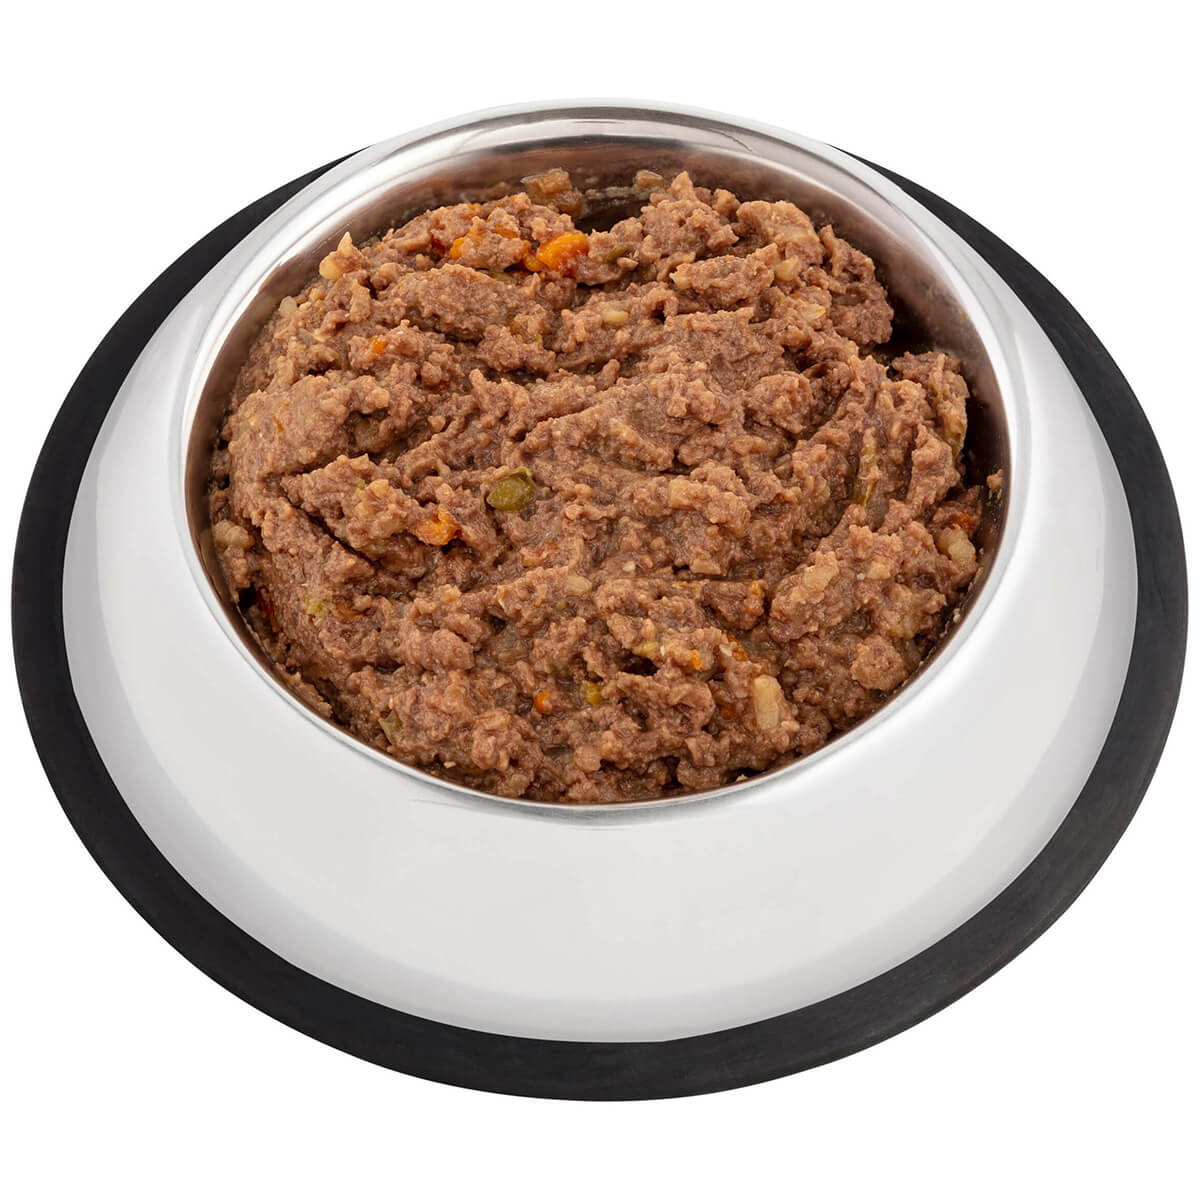 Ivory Coat Holistic Nutrition Adult Lamb & Brown Rice Loaf Wet Dog Food 400g (100000024732) [default_color]